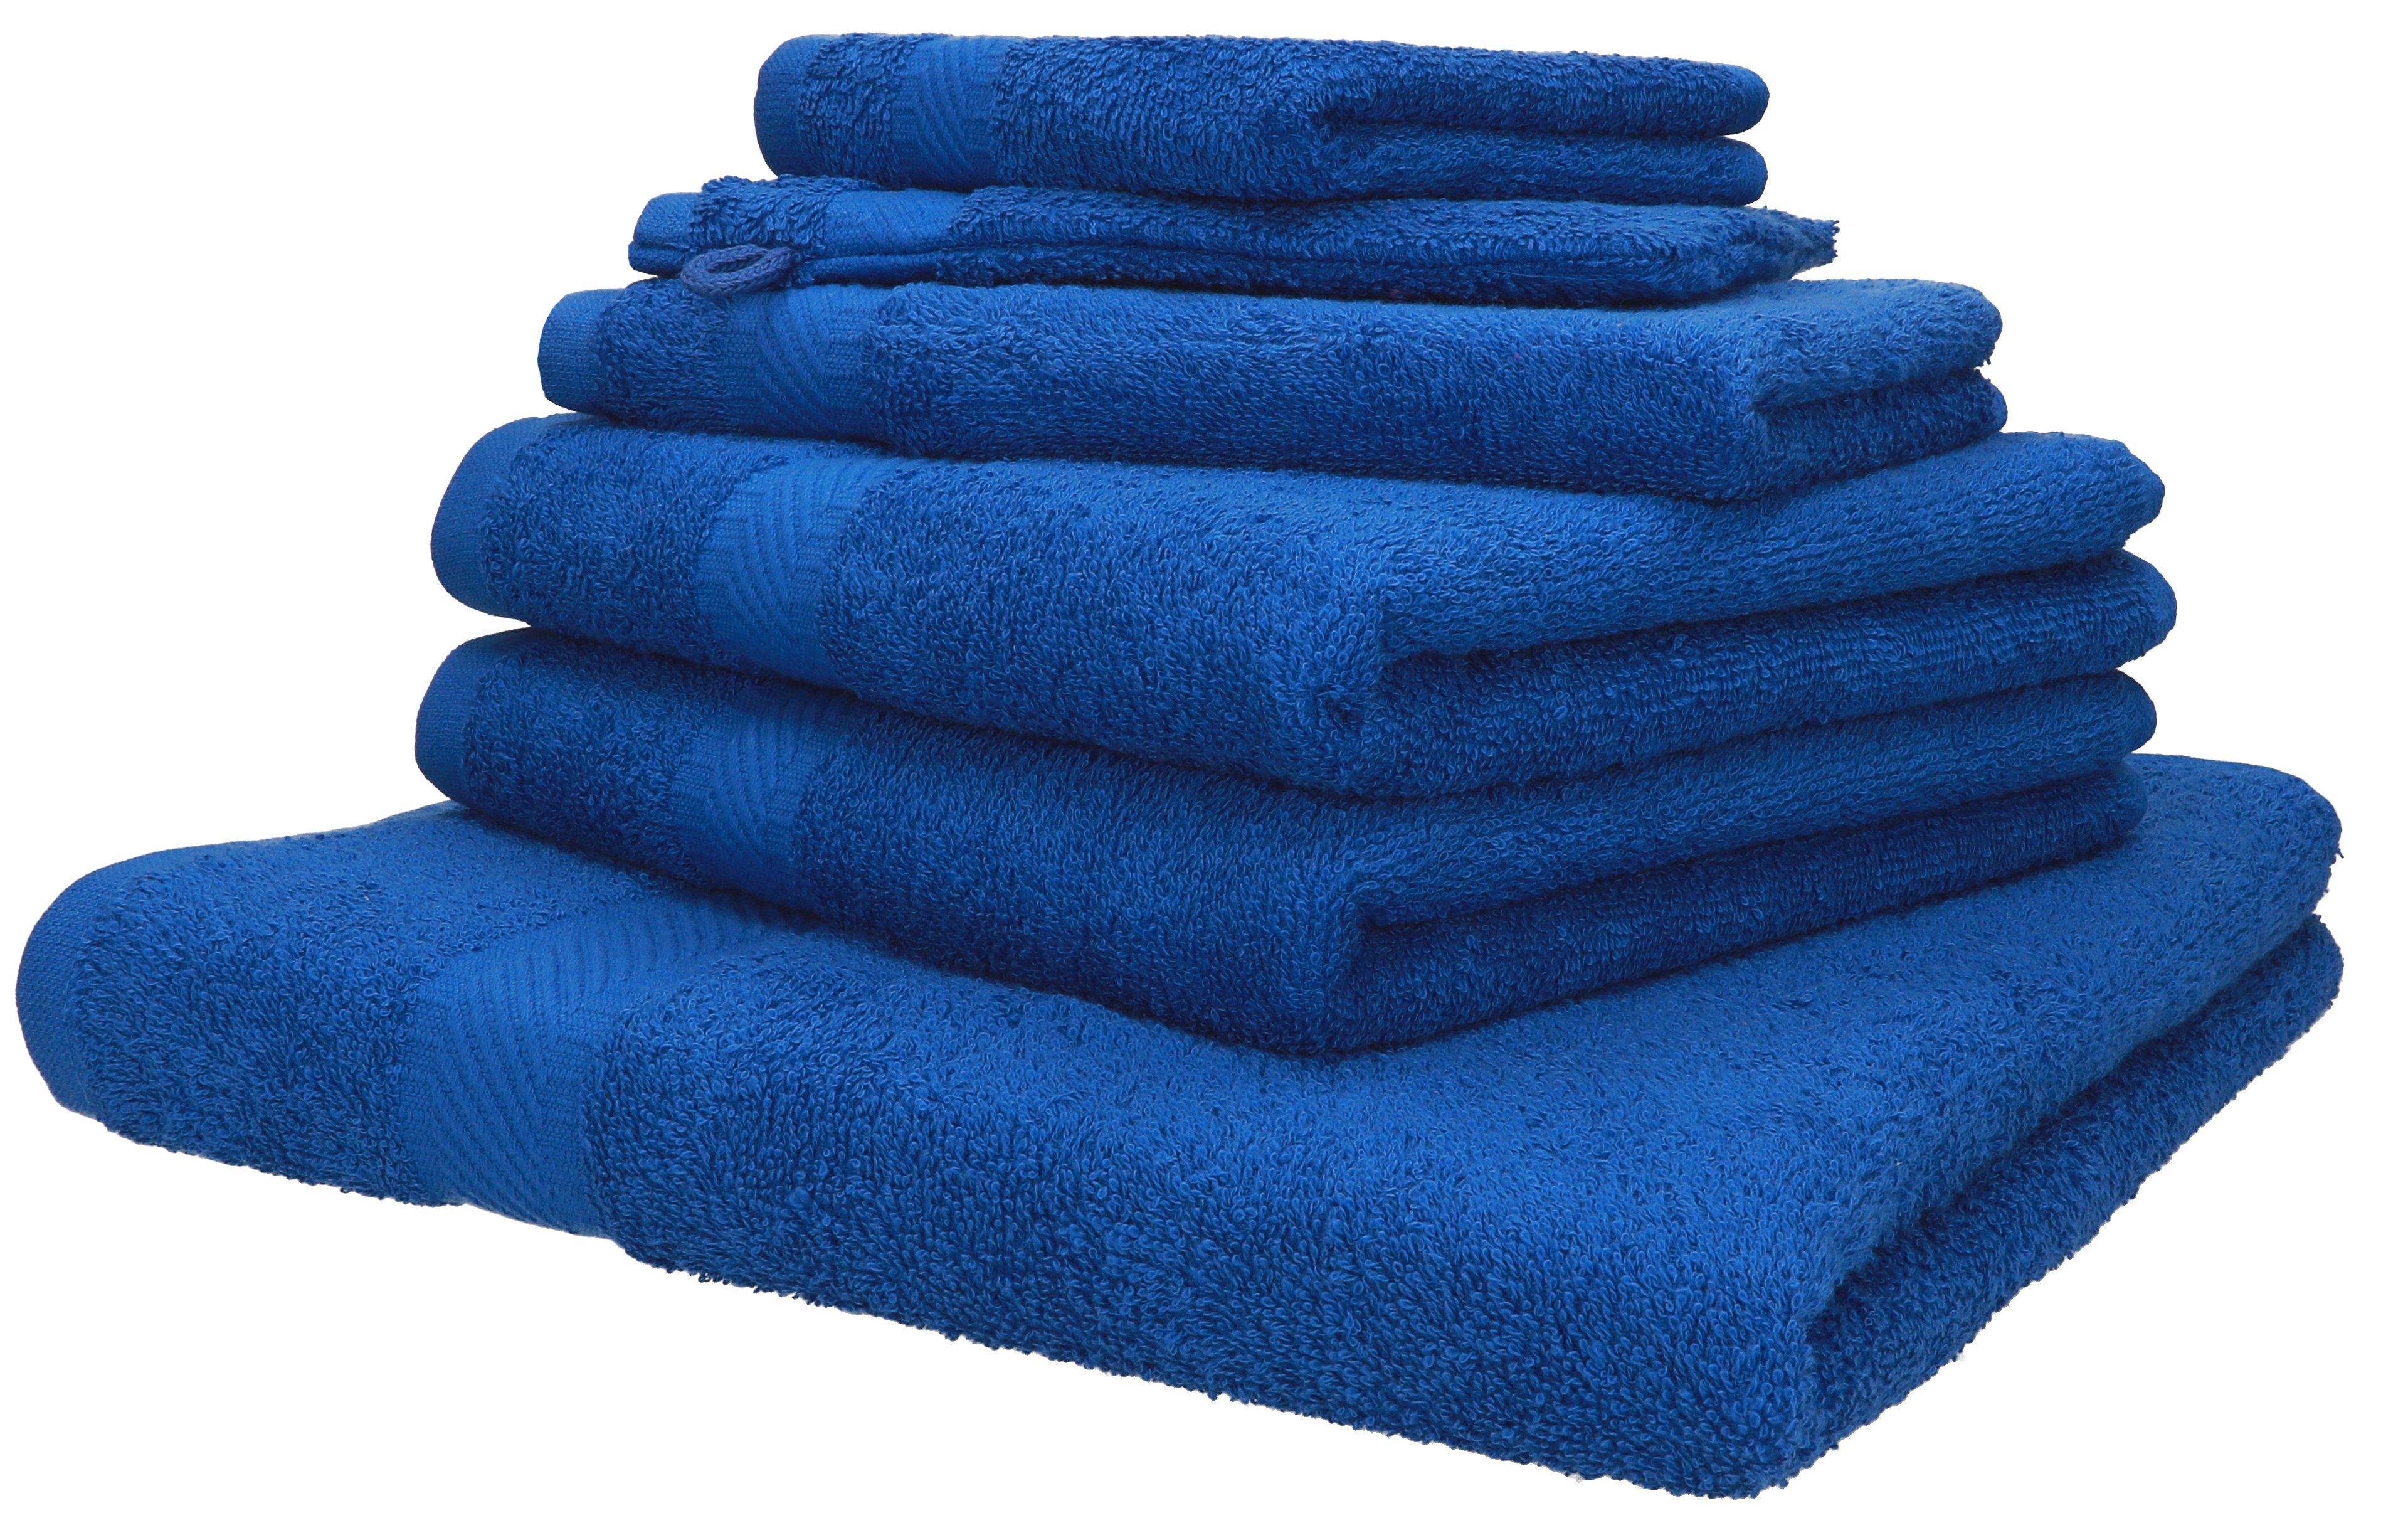 Betz Handtuch Set Palermo 6 tlg. in verschiedenen Farben, 100% Baumwolle blau